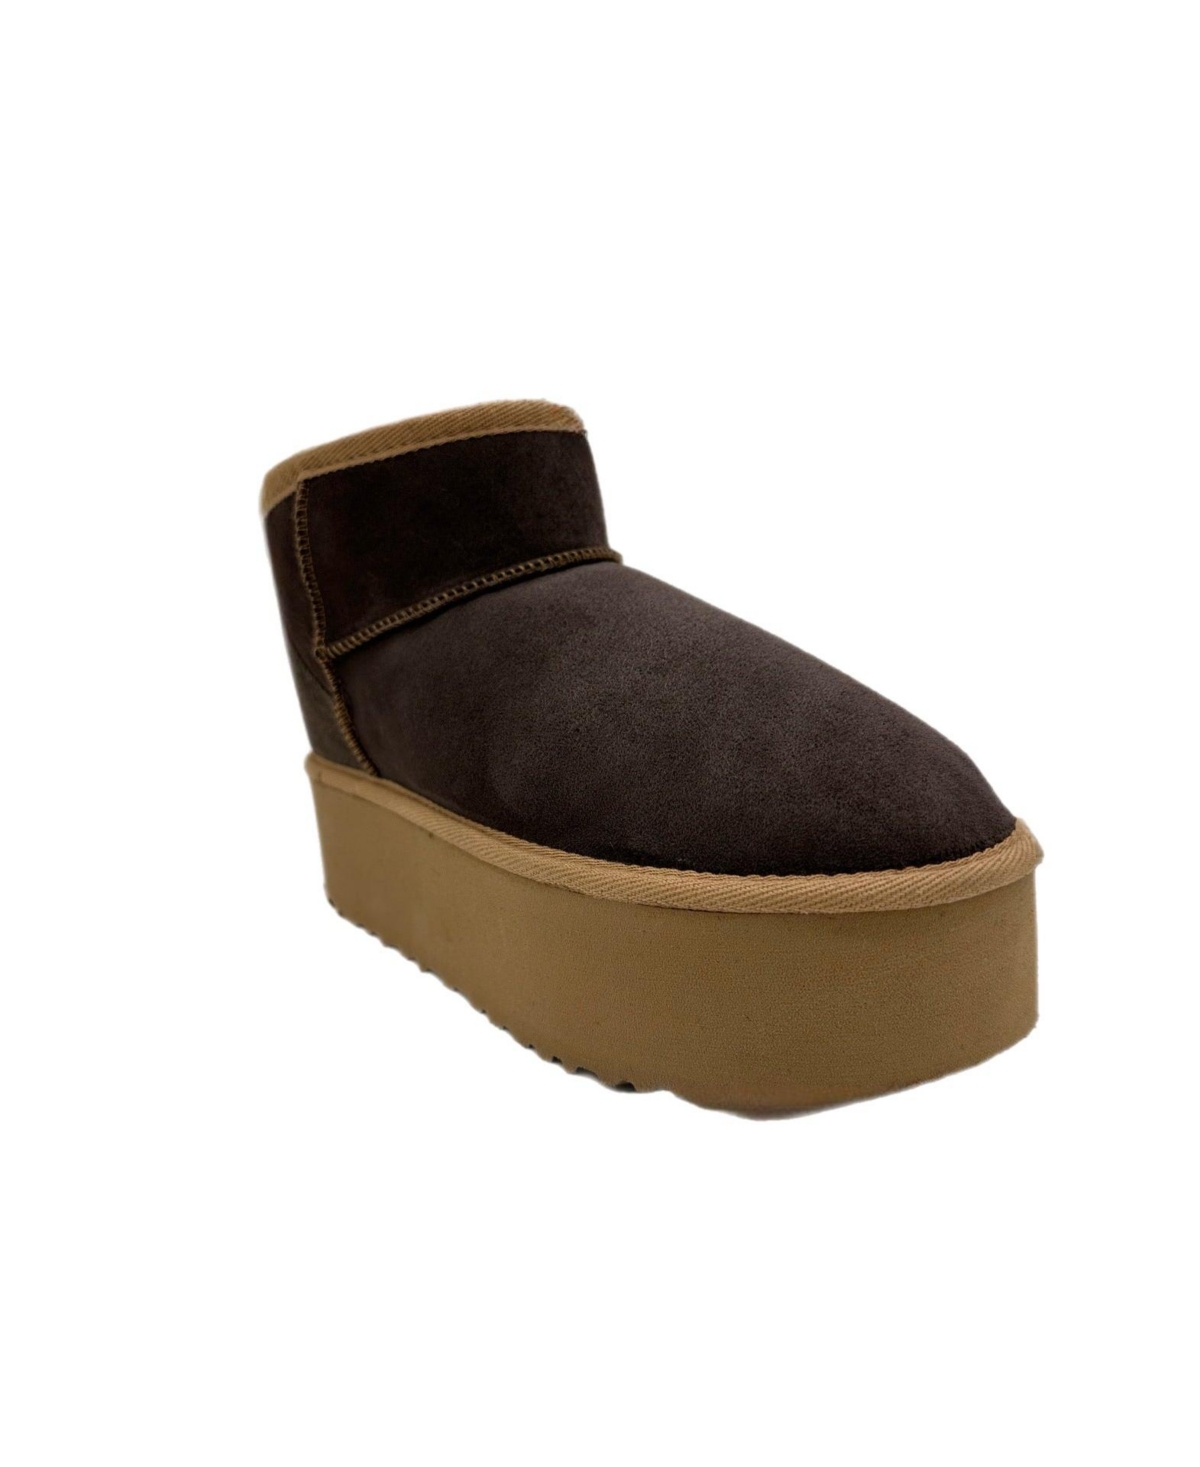 Women's Genuine Sheepskin Boots - Dark brown